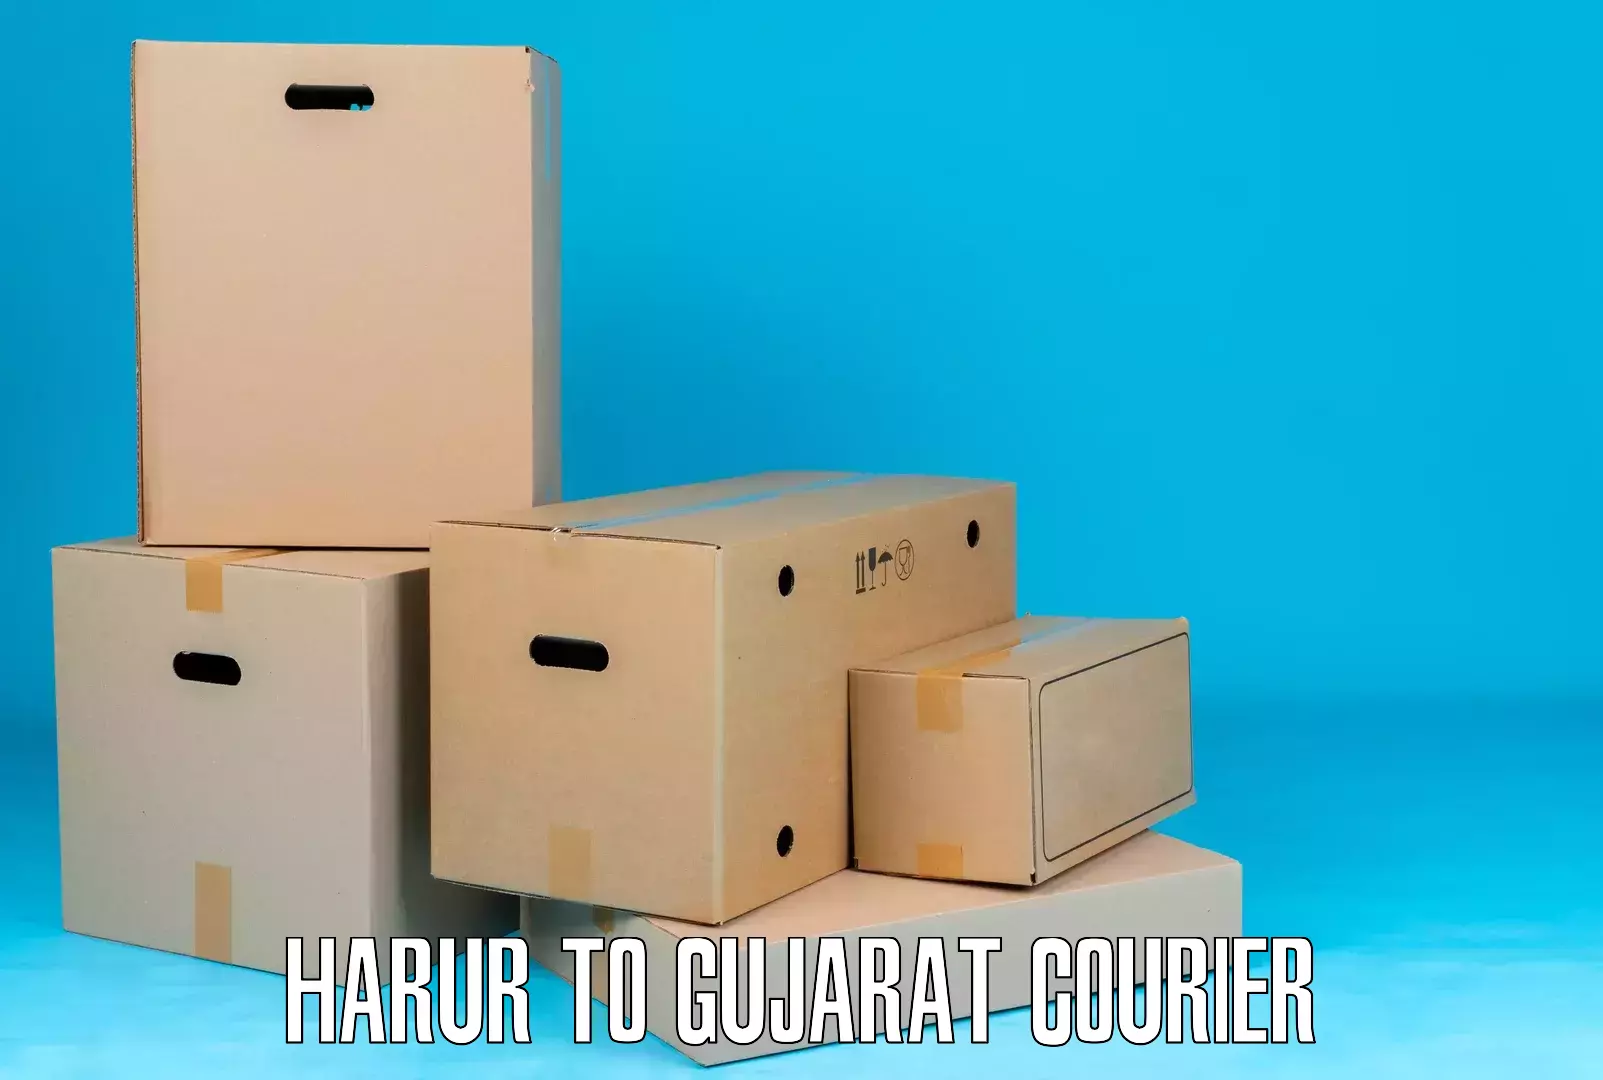 Courier service efficiency Harur to Ambaji